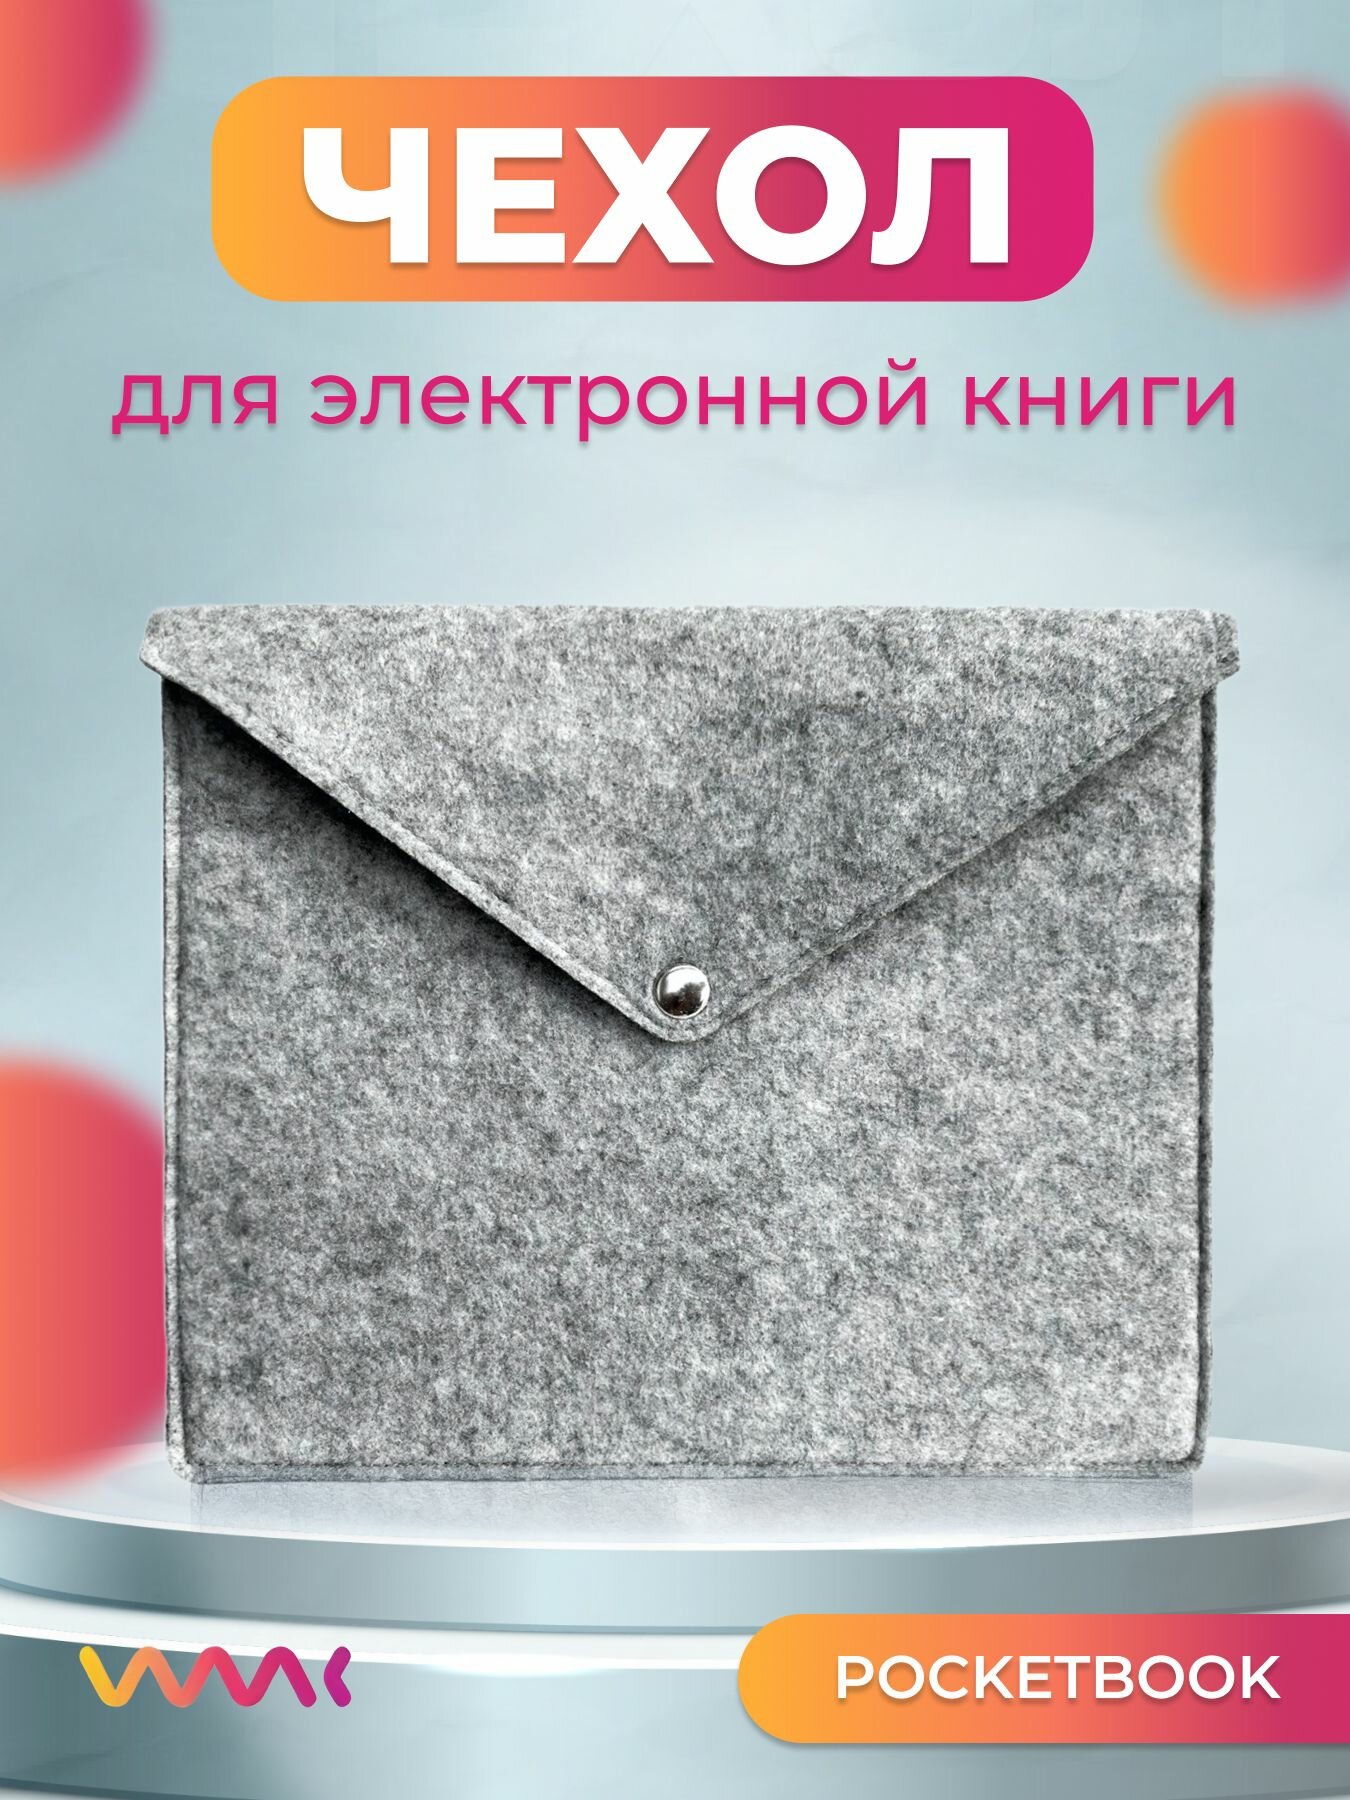 Войлочный чехол для электронной книги PocketBook 606